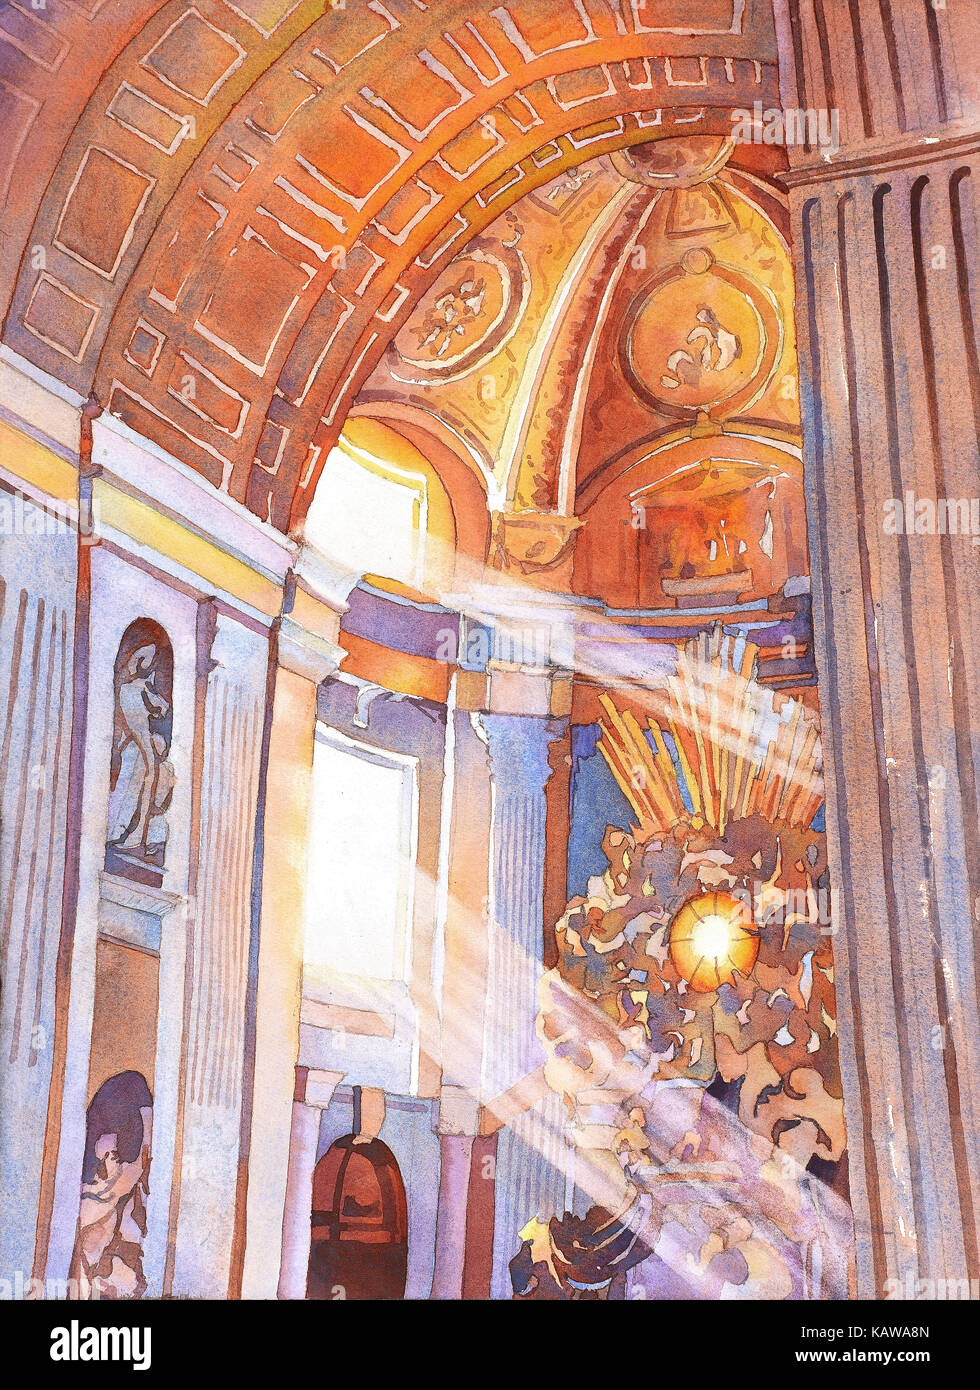 L'aquarelle des rayons de lumière à travers la vitre à l'intérieur de rayures de la Basilique St Pierre- Vatican, Rome (Italie) Banque D'Images